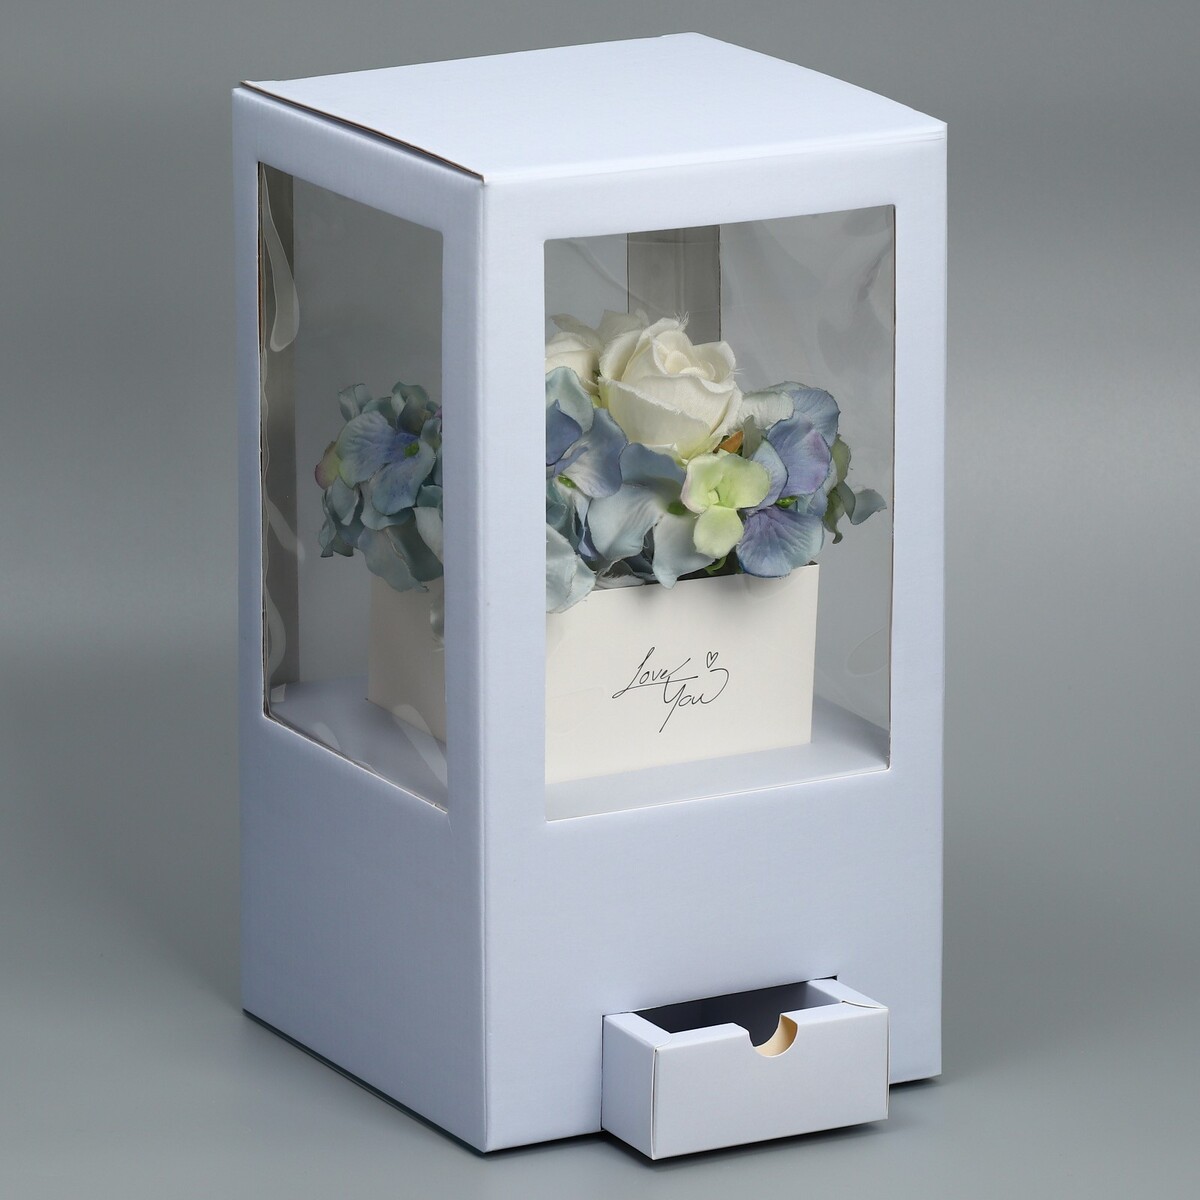 Коробка подарочная для цветов с вазой из мгк складная, упаковка, коробка для ов с вазой и pvc окнами складная 23 х 30 х 23 см белый